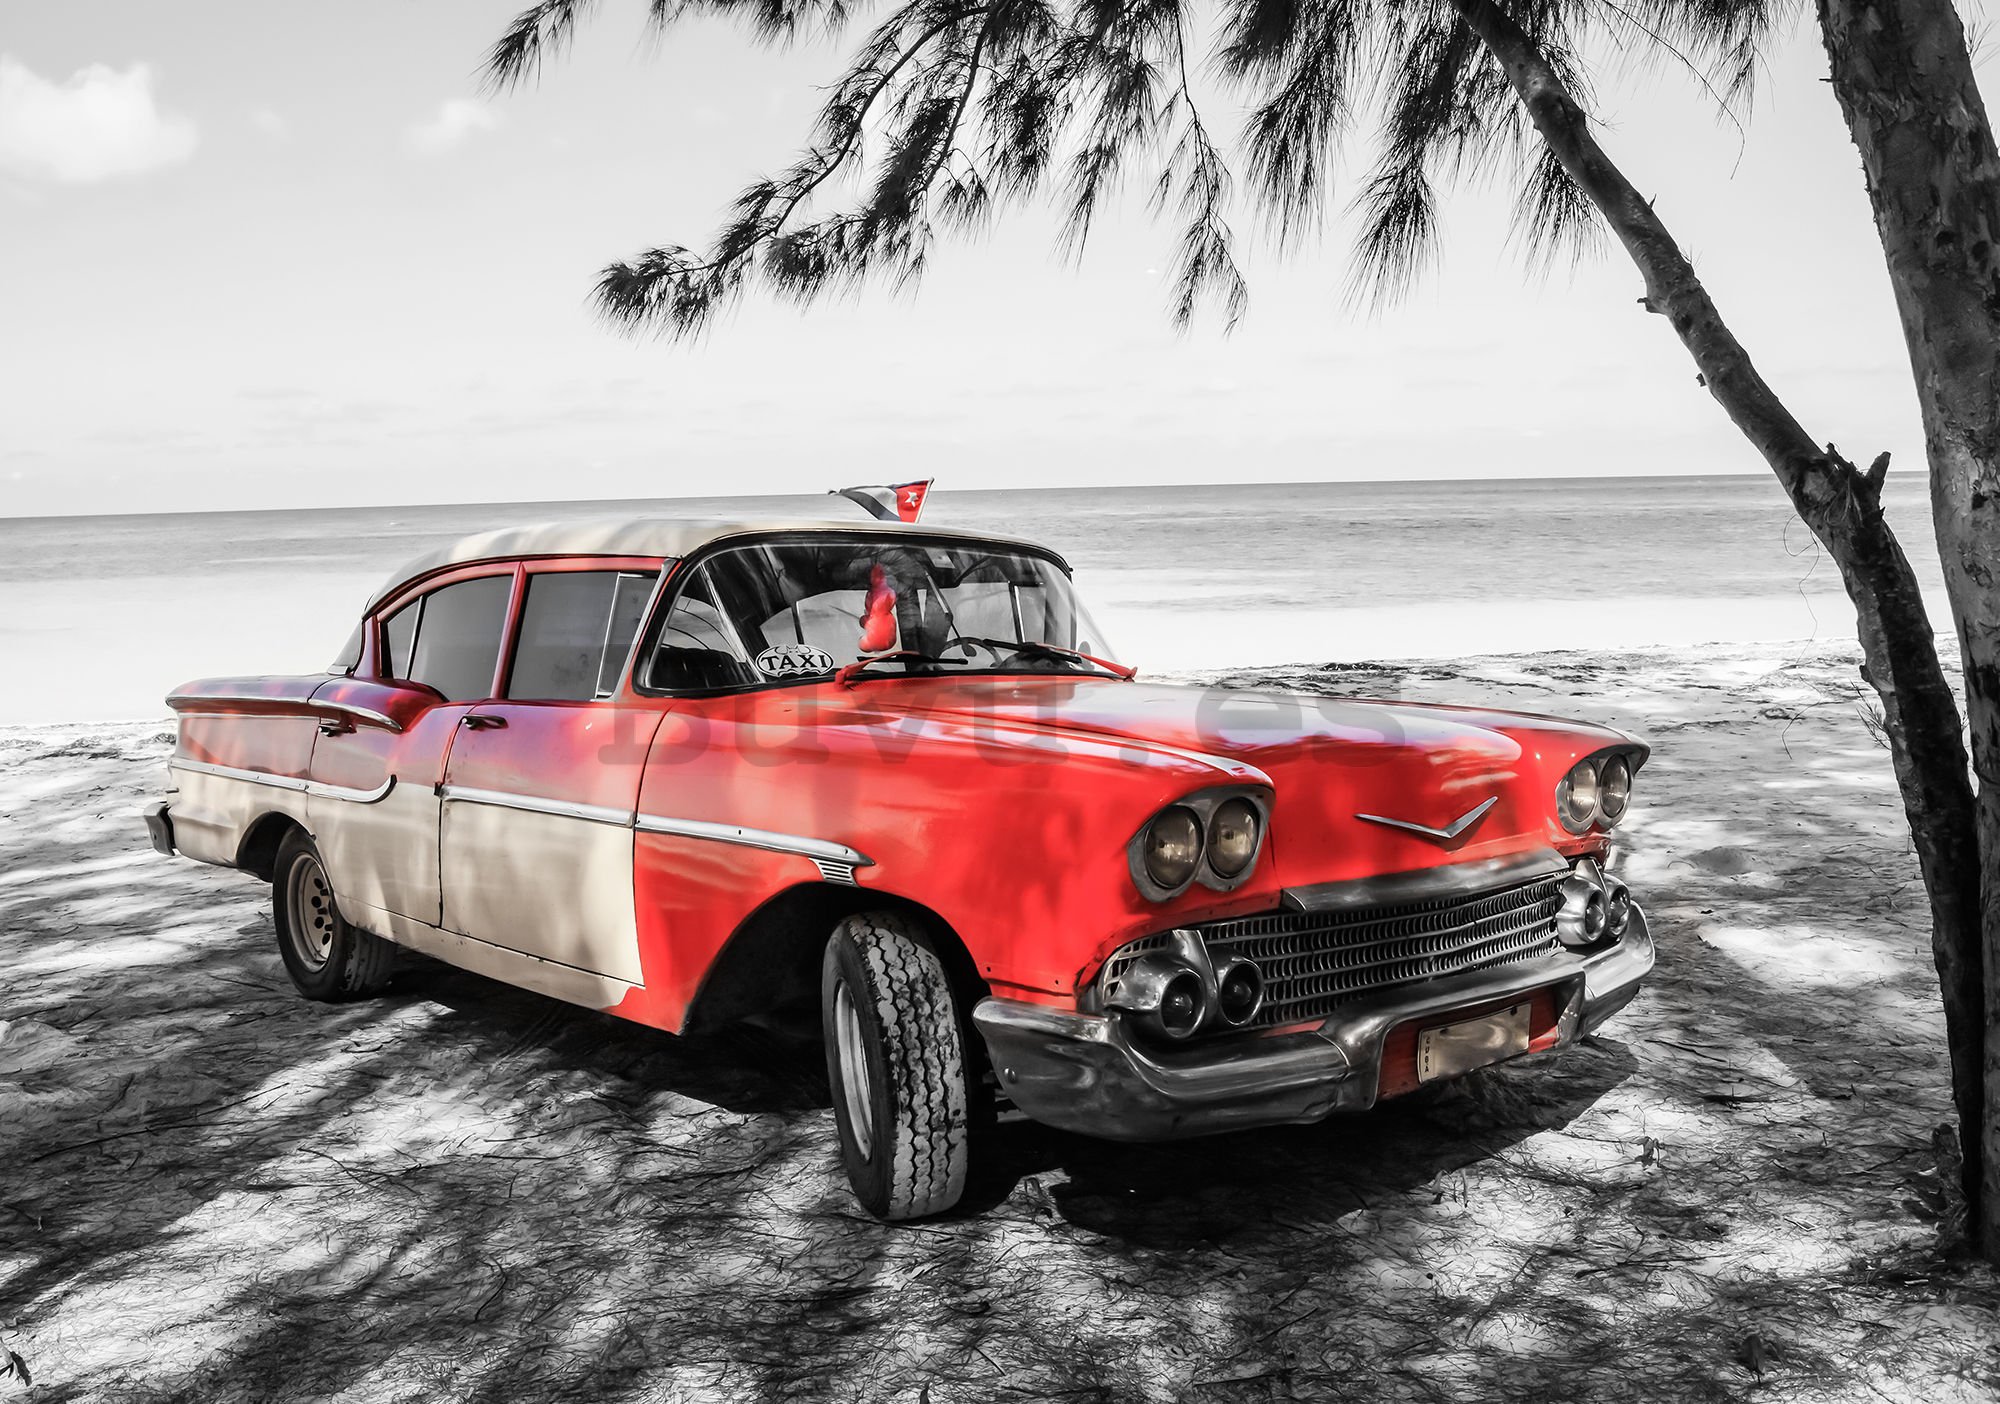 Fotomural TNT: Cuba coche rojo junto al mar - 184x254 cm